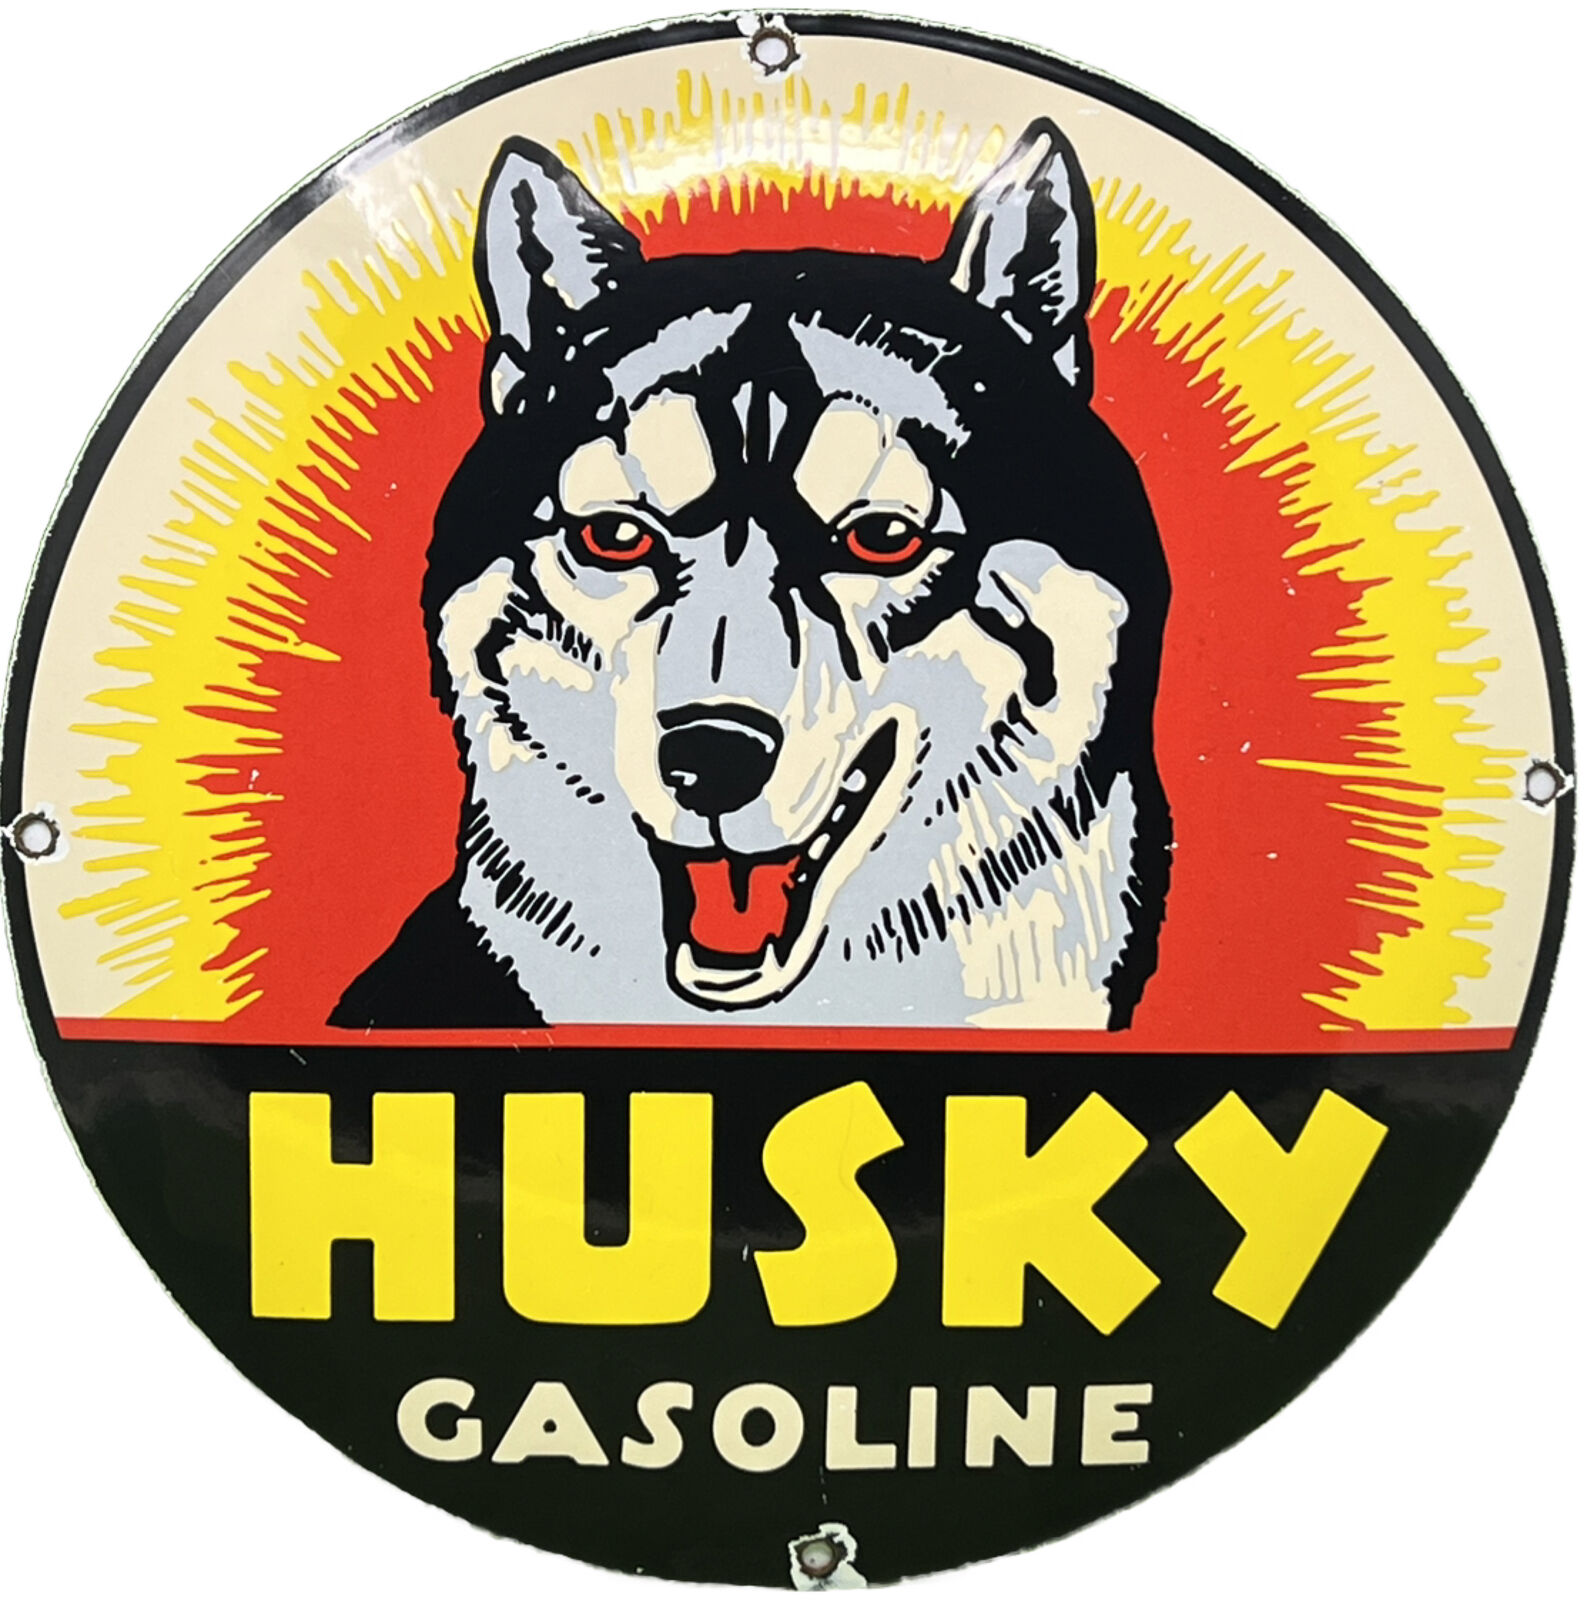 VINTAGE HUSKY GASOLINE PORCELAIN SIGN K-9 GAS STATION CONVEX PUMP PLATE OIL DOG